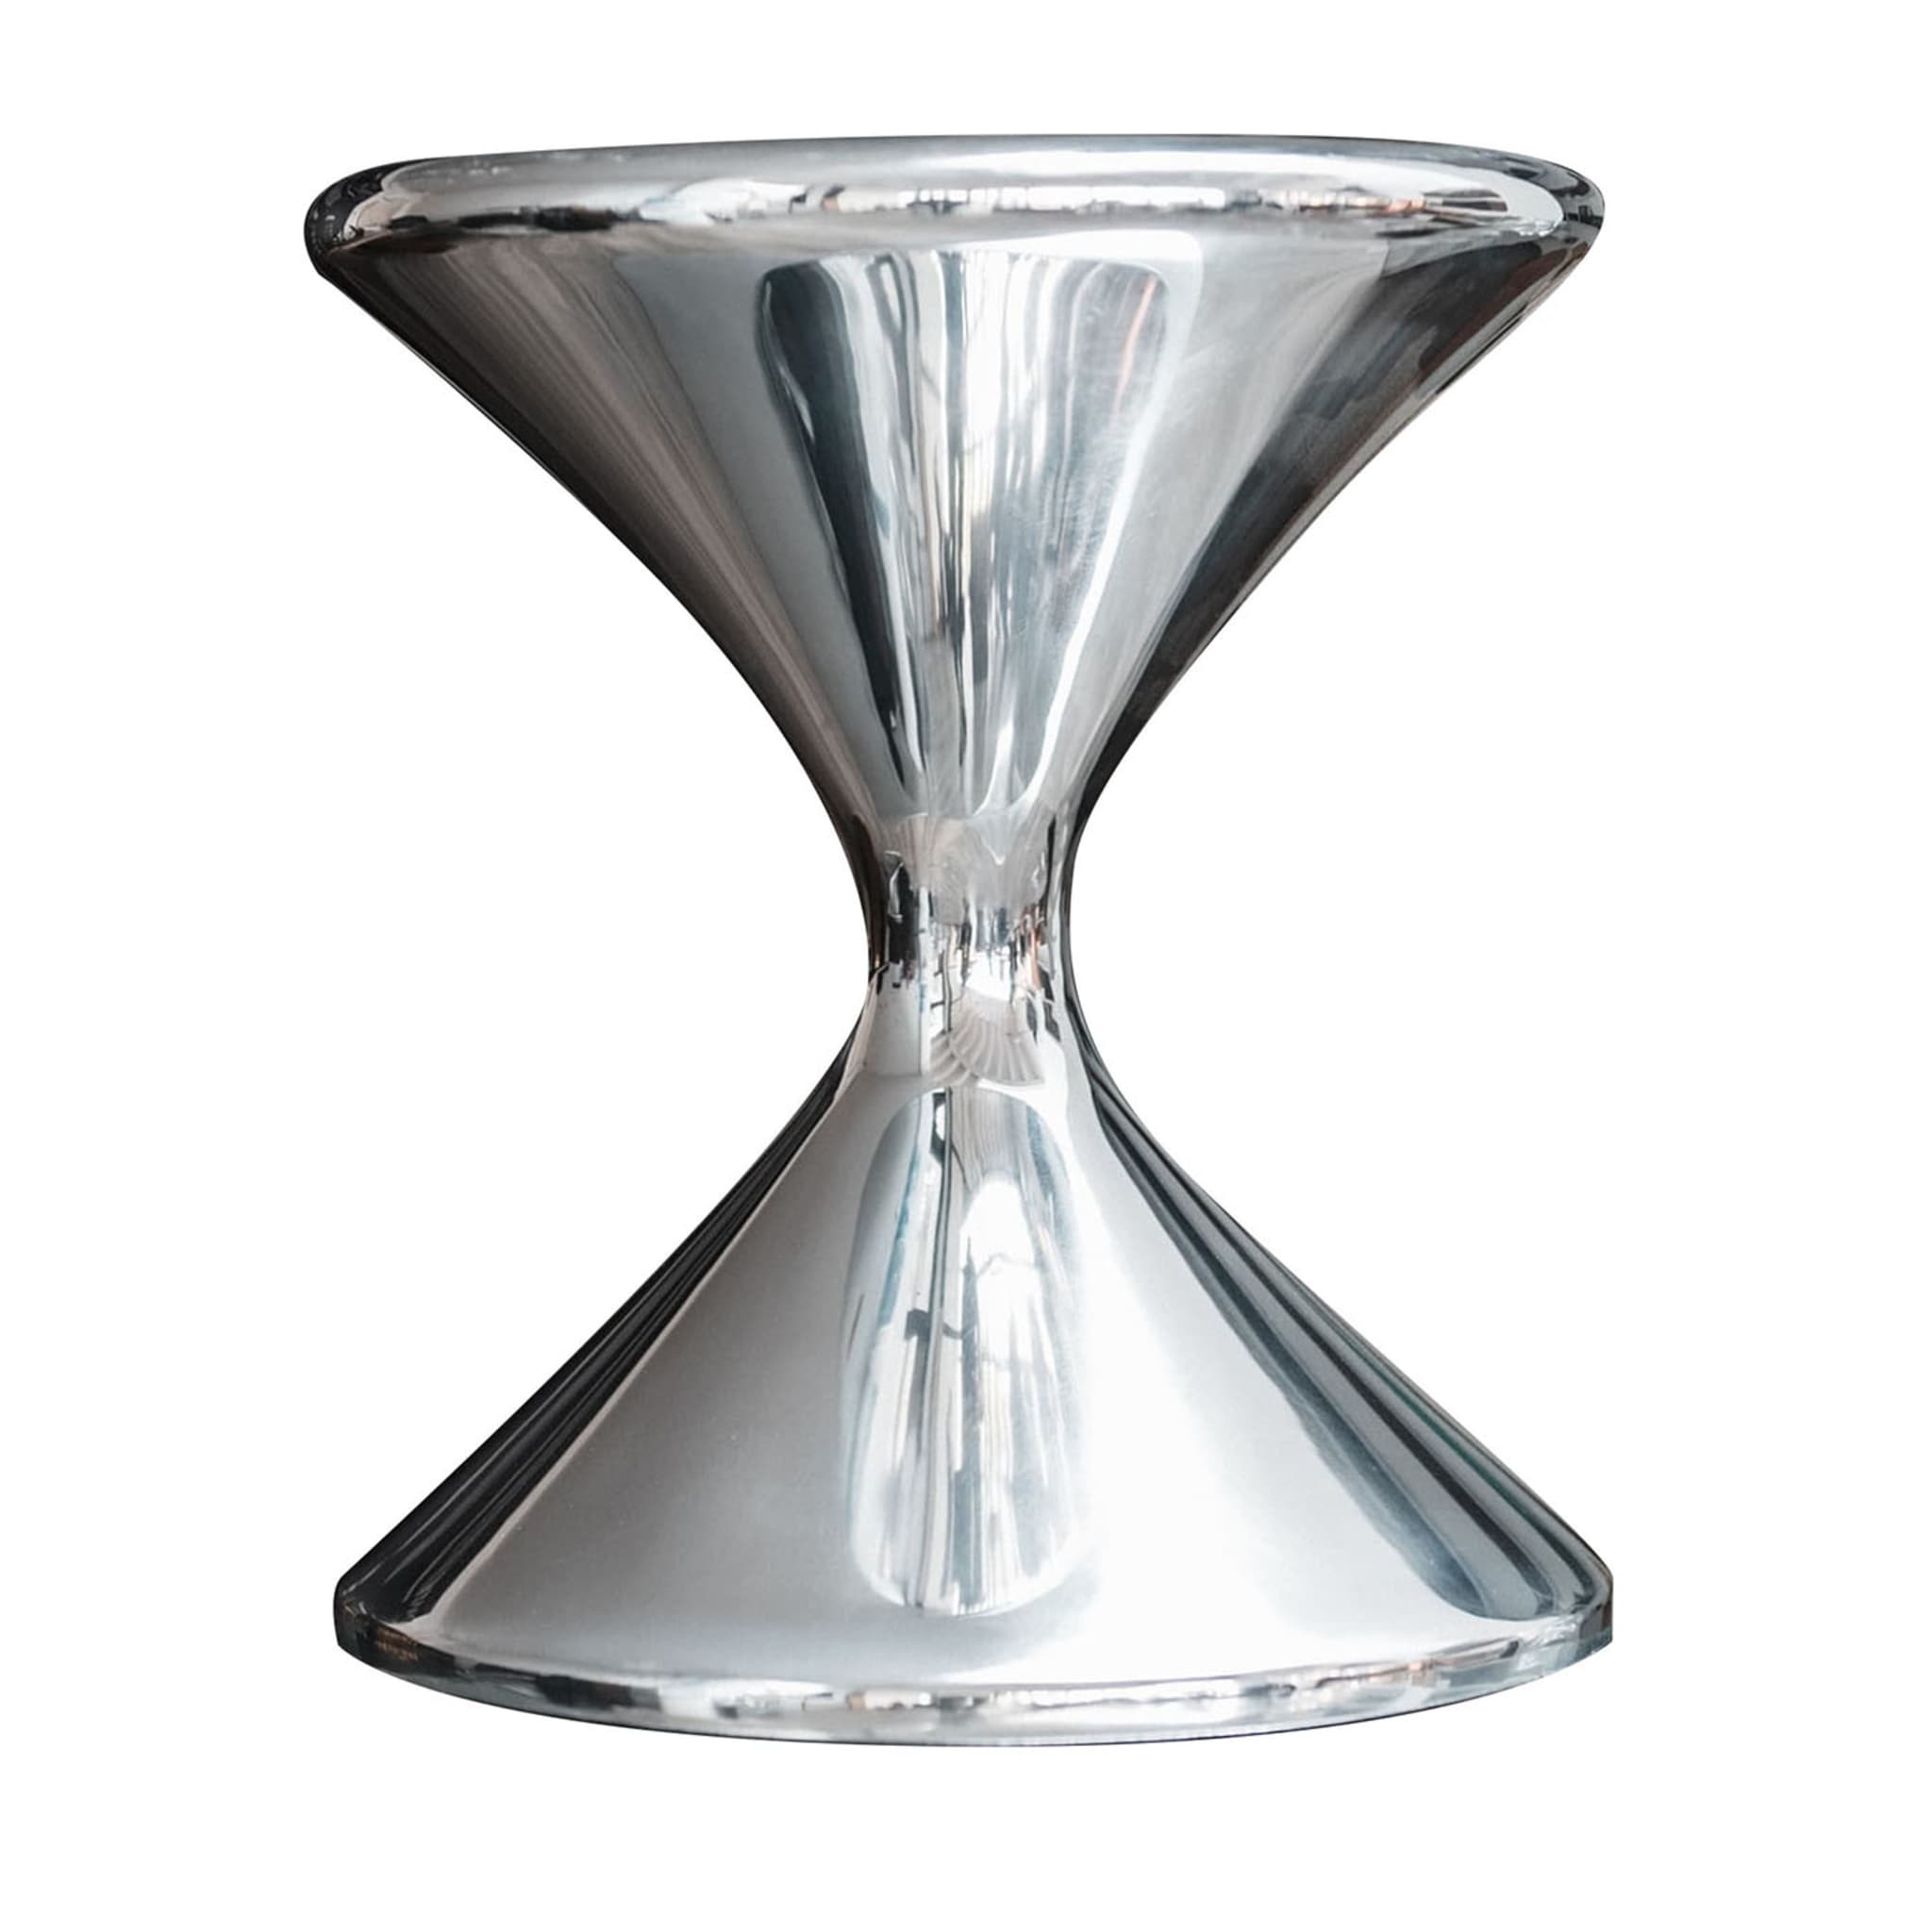 FoRMA Parabola Silberne Vase von Simone Micheli - Hauptansicht